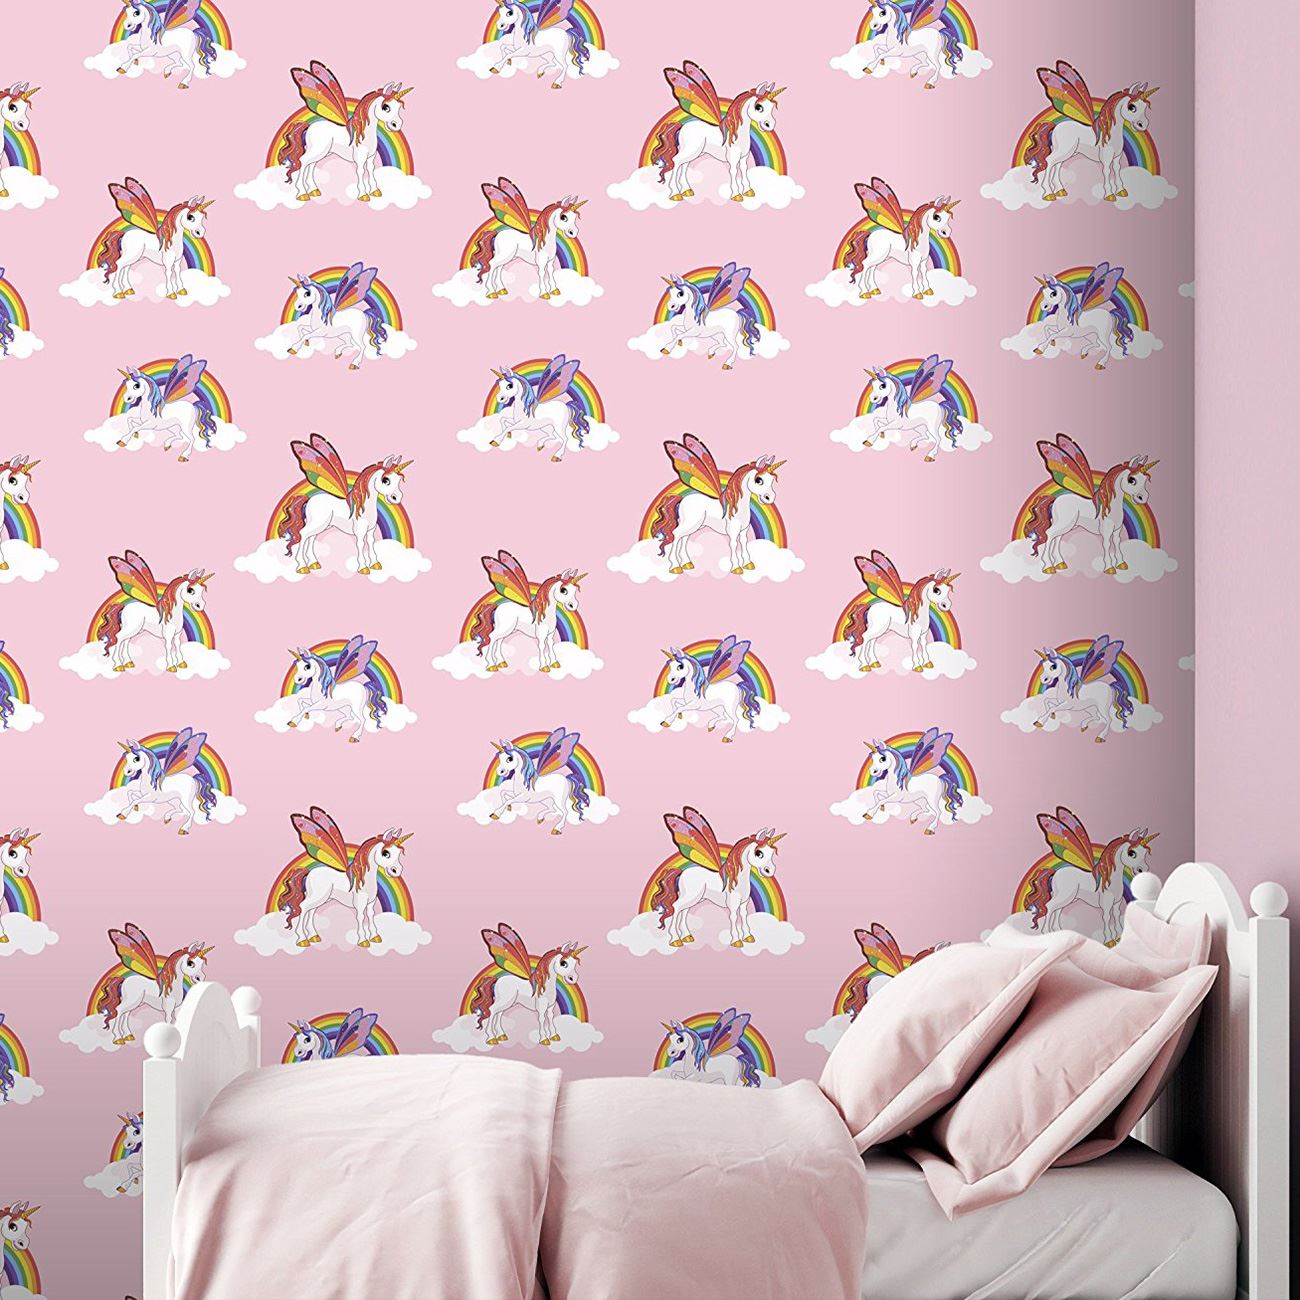 키즈 핑크 벽지,벽지,벽 스티커,분홍,벽,방